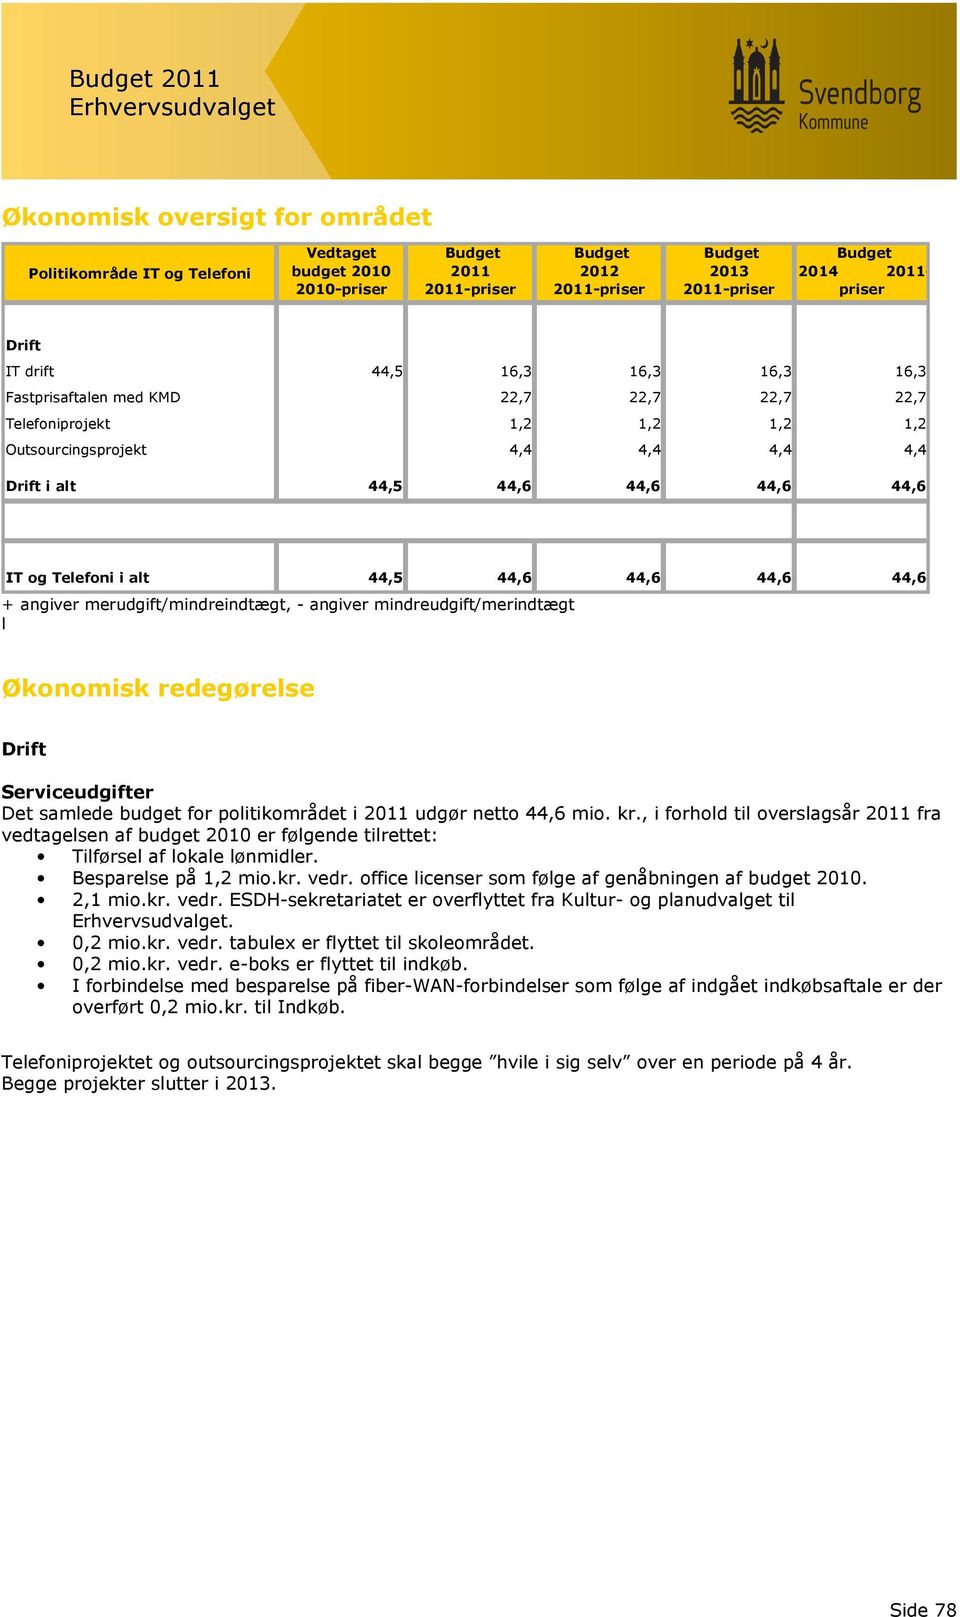 mindreudgift/merindtægt l Økonomisk redegørelse Serviceudgifter Det samlede budget for politikområdet i 2011 udgør netto 44,6 mio. kr.